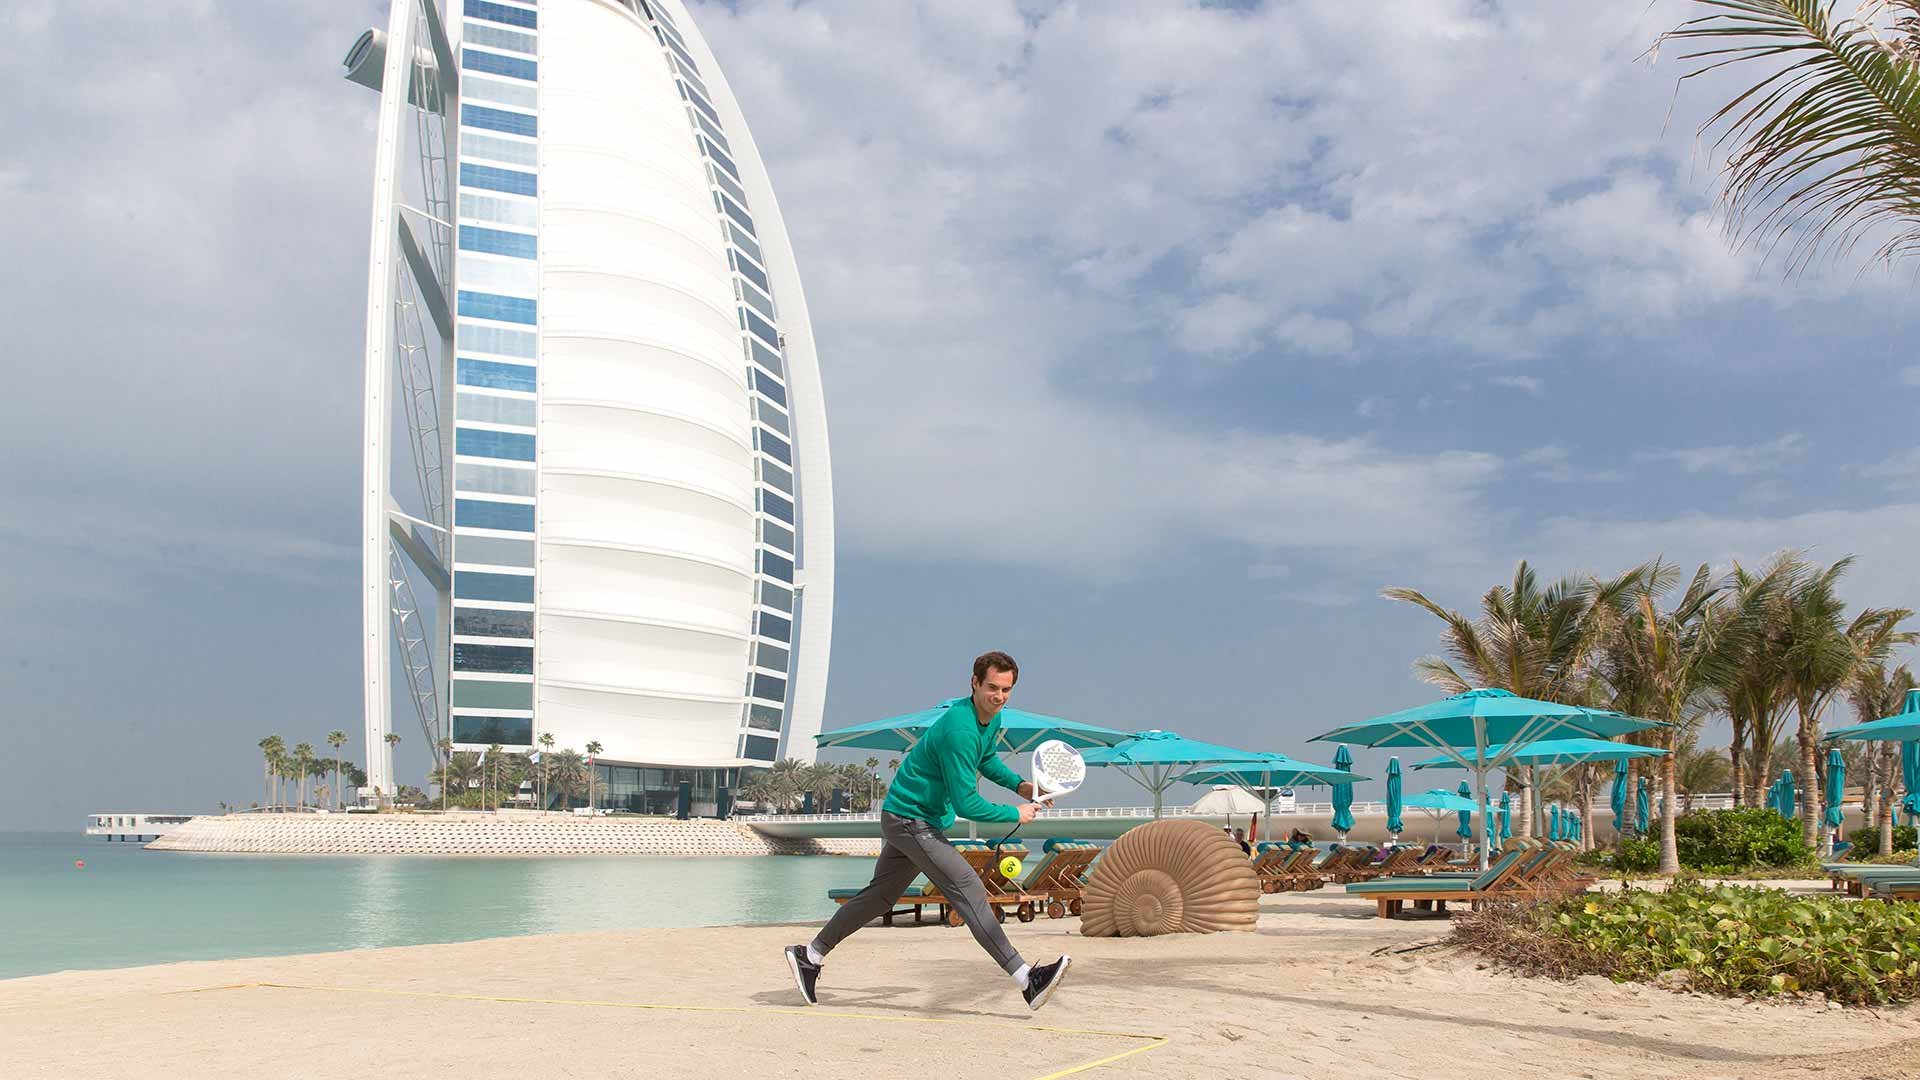 Открыт ли дубай для туристов сейчас. Пляж Аль Суфух Дубай. Теннисный корт в пустыне Дубая. На серфинге арабских Эмиратах. Дубай Тунис Валерьевич.